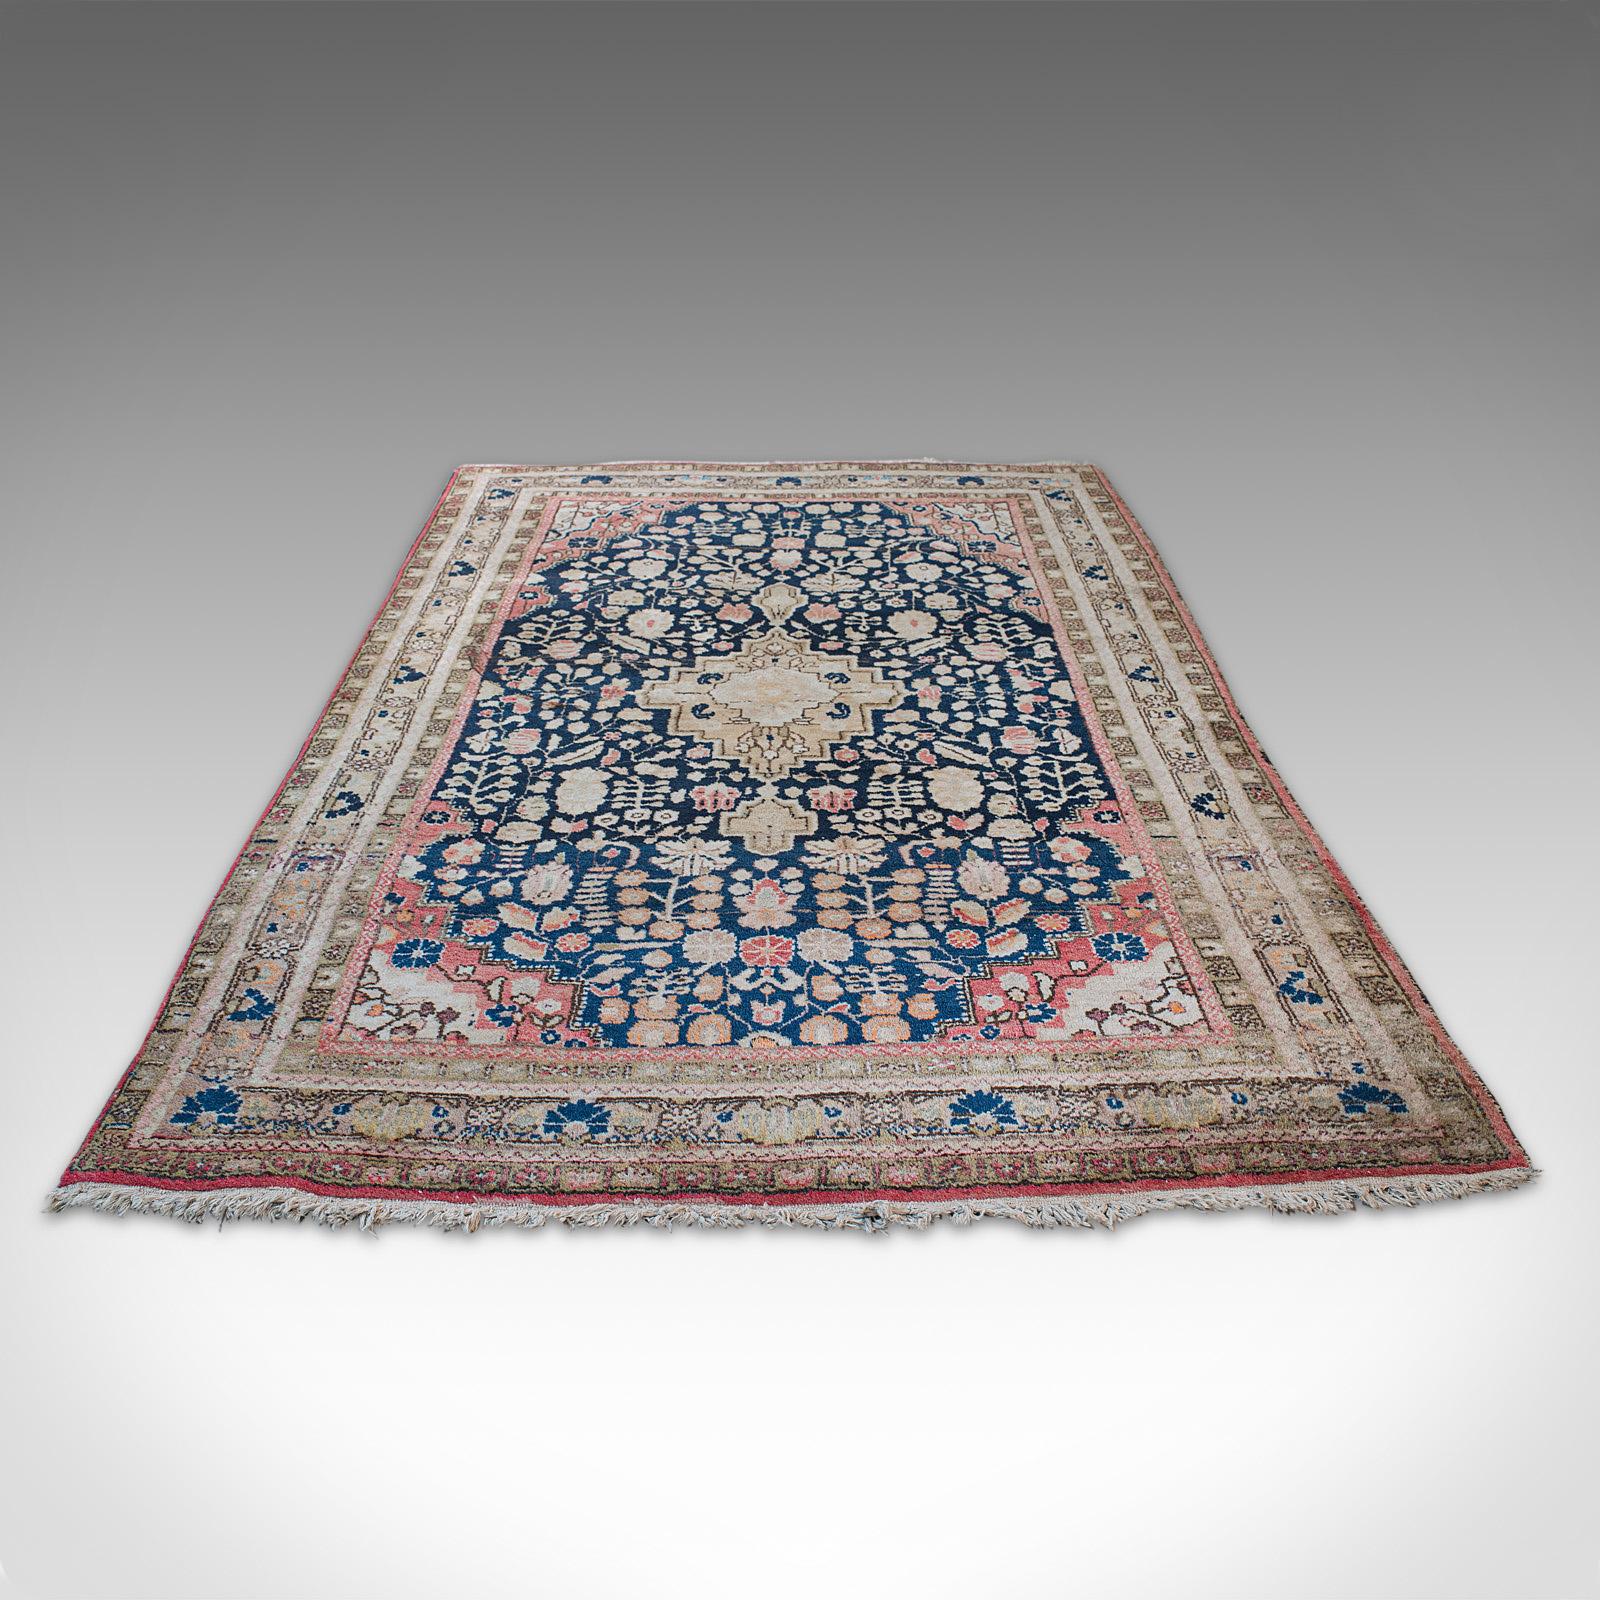 Il s'agit d'un tapis sarouk vintage. Tapis d'entrée ou de salon persan, en laine, de taille Dozar, datant du début du 20e siècle, vers 1930.

Un tapis traditionnel de taille Dozar de 219 cm (86,25